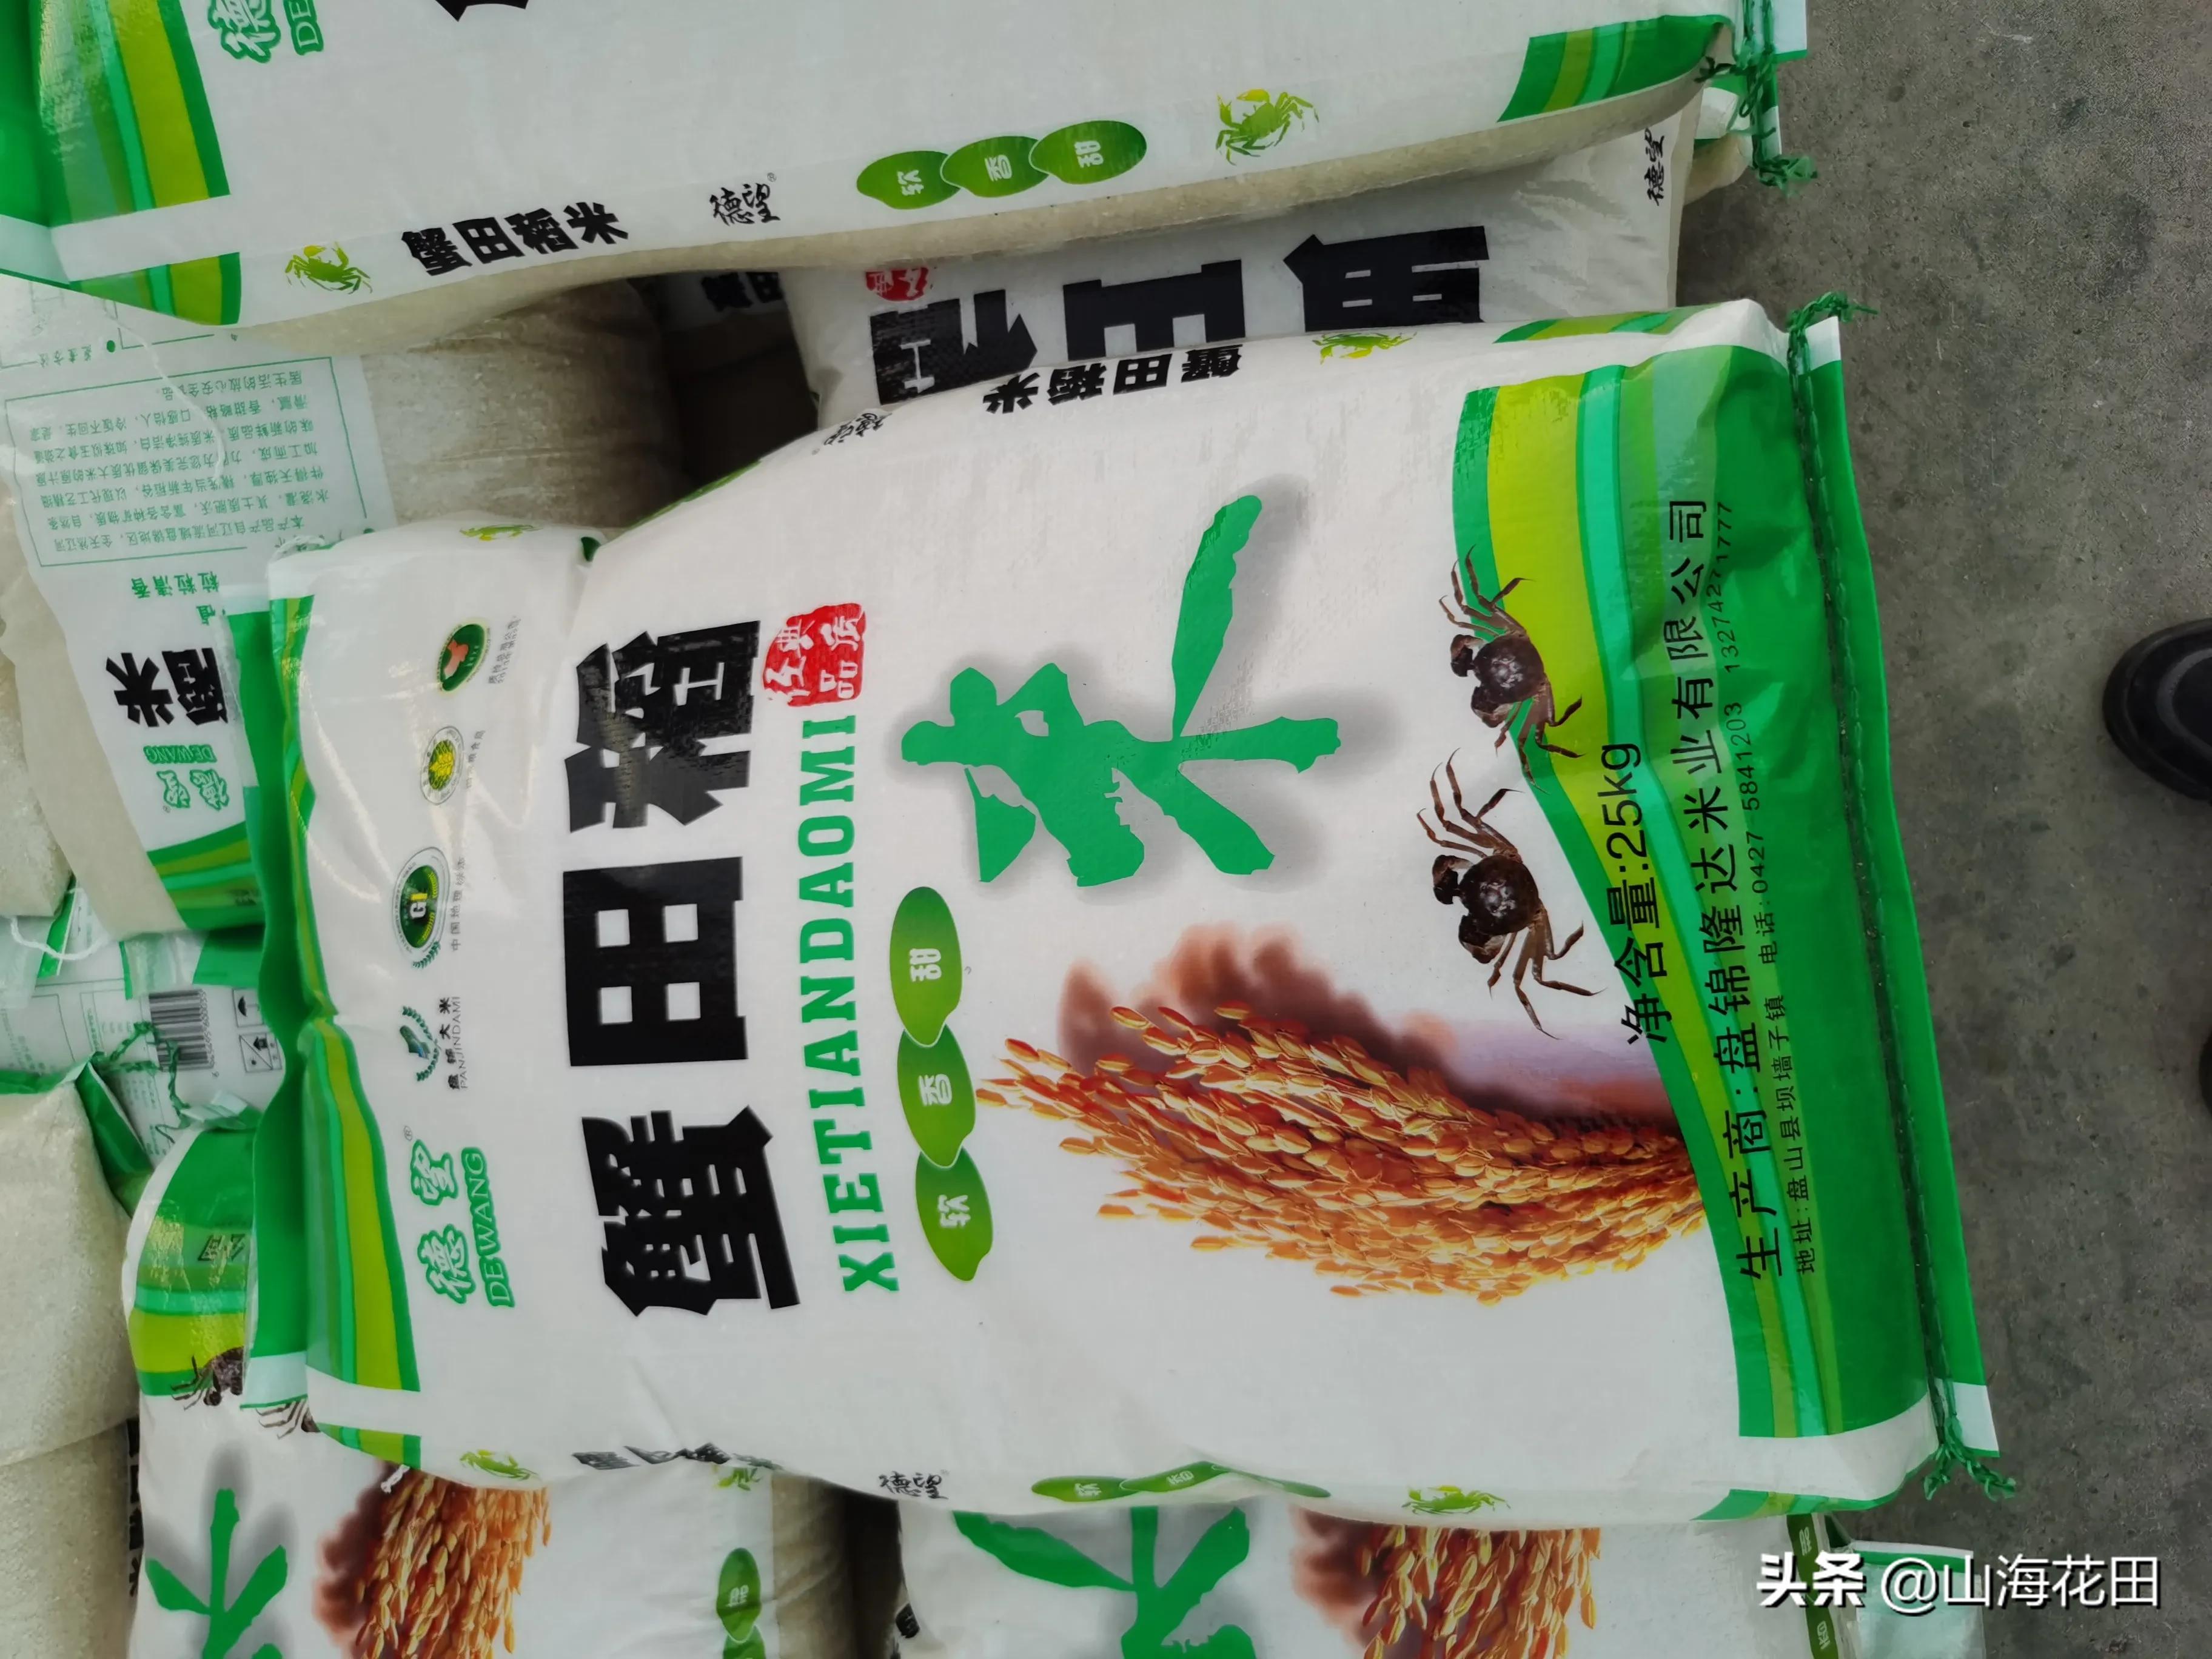 今年有三大怪，水稻玉米和大豆不安常理来发牌。